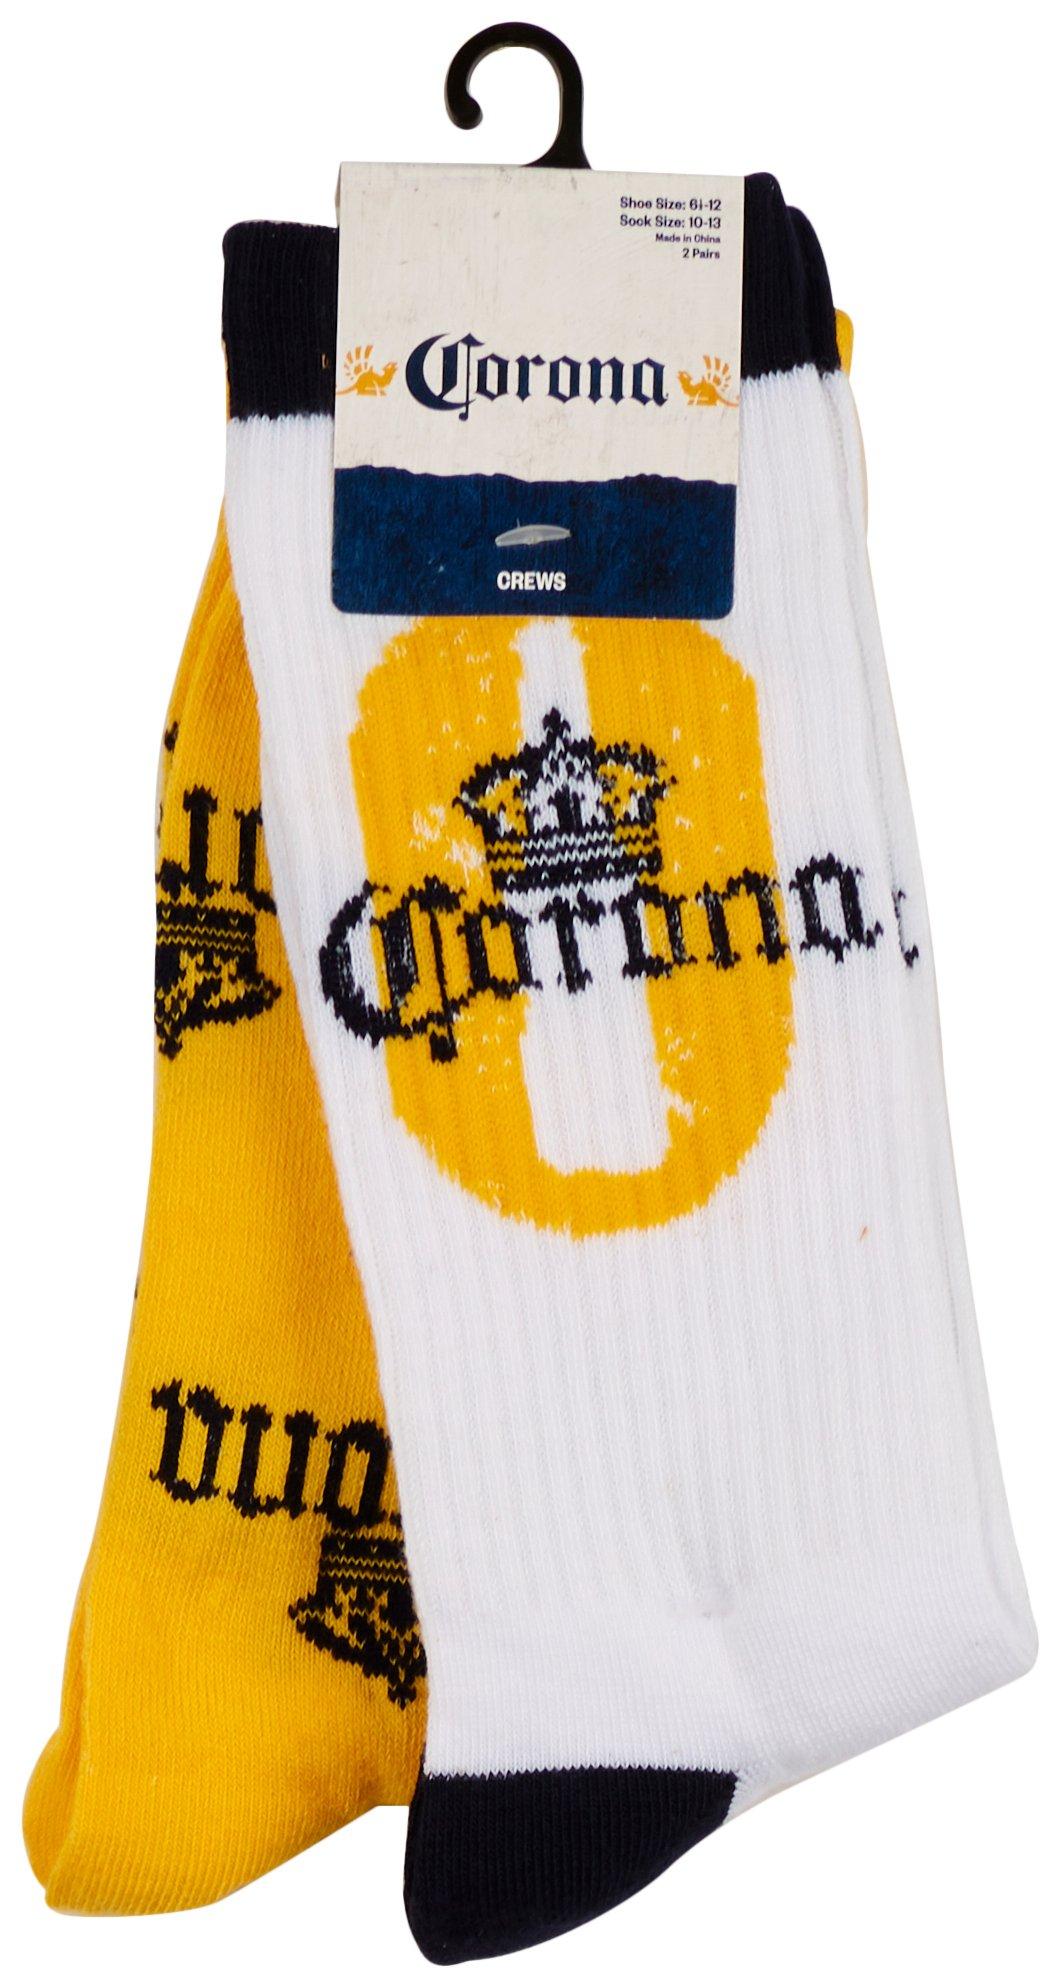 Corona Mens 2-Pair Logo Print Crew Socks